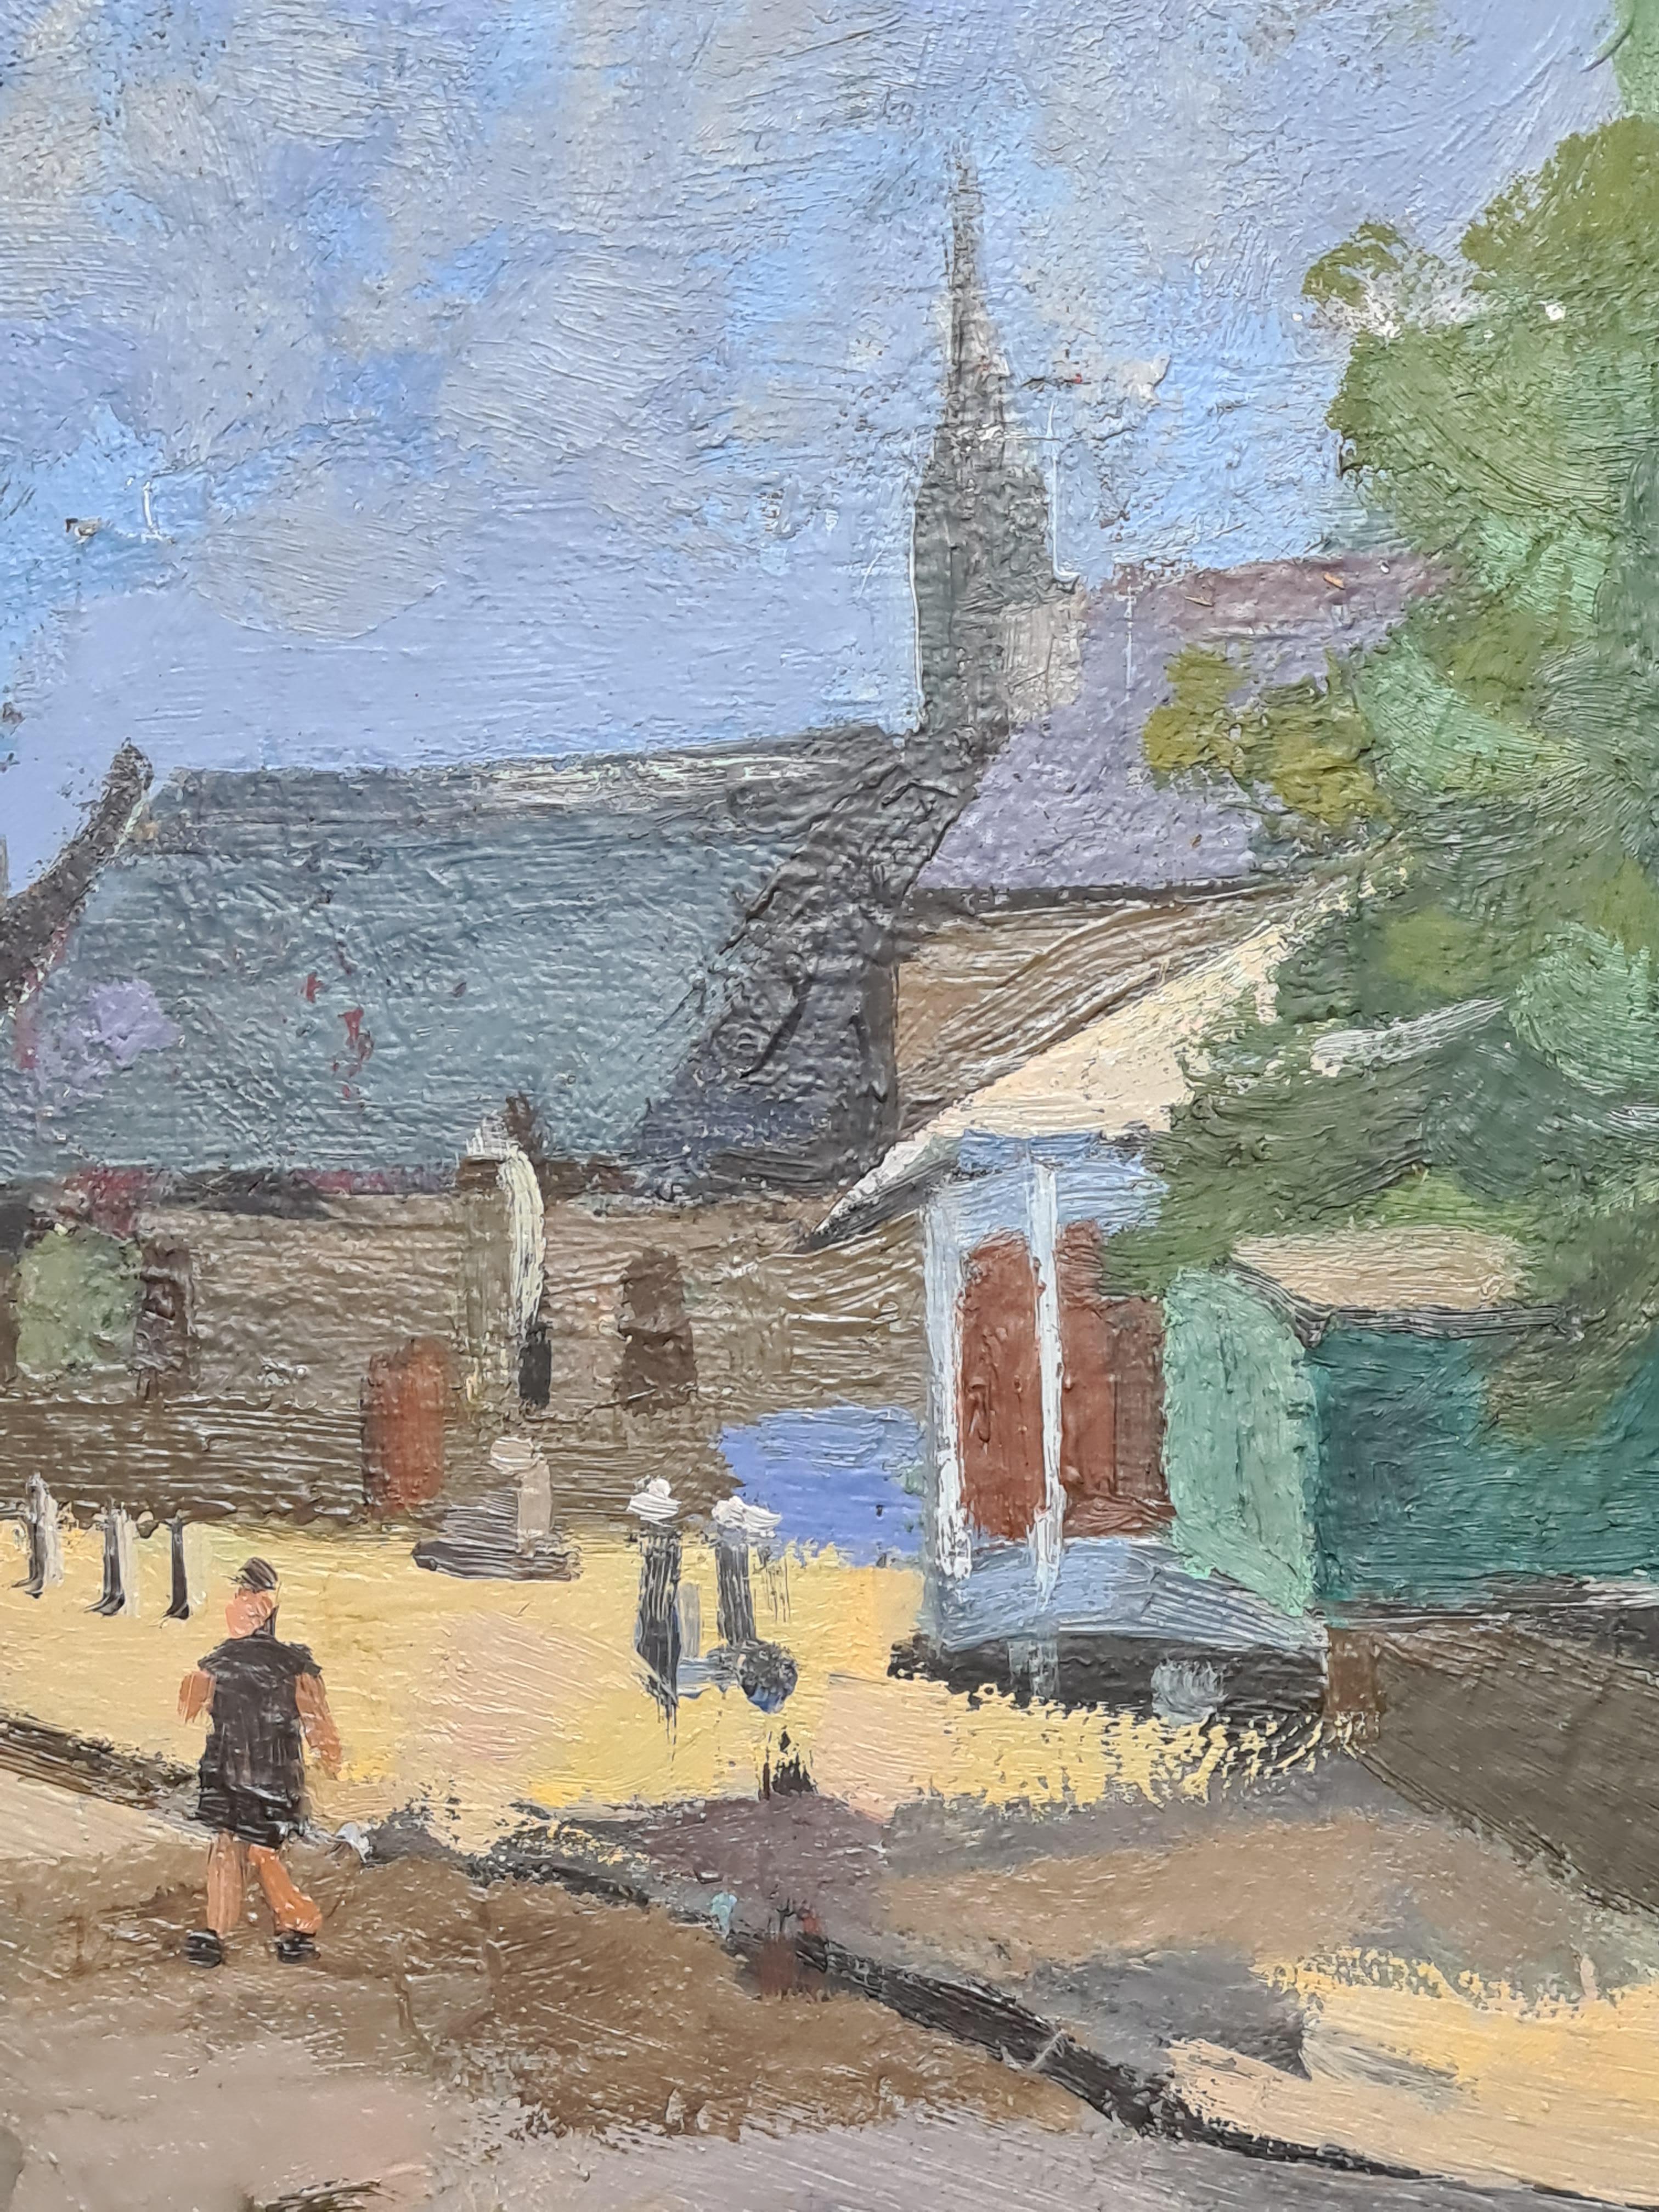 The French Village, Mid Century Villagescape - Brown Landscape Painting by Ghislaine de Fiquelmont